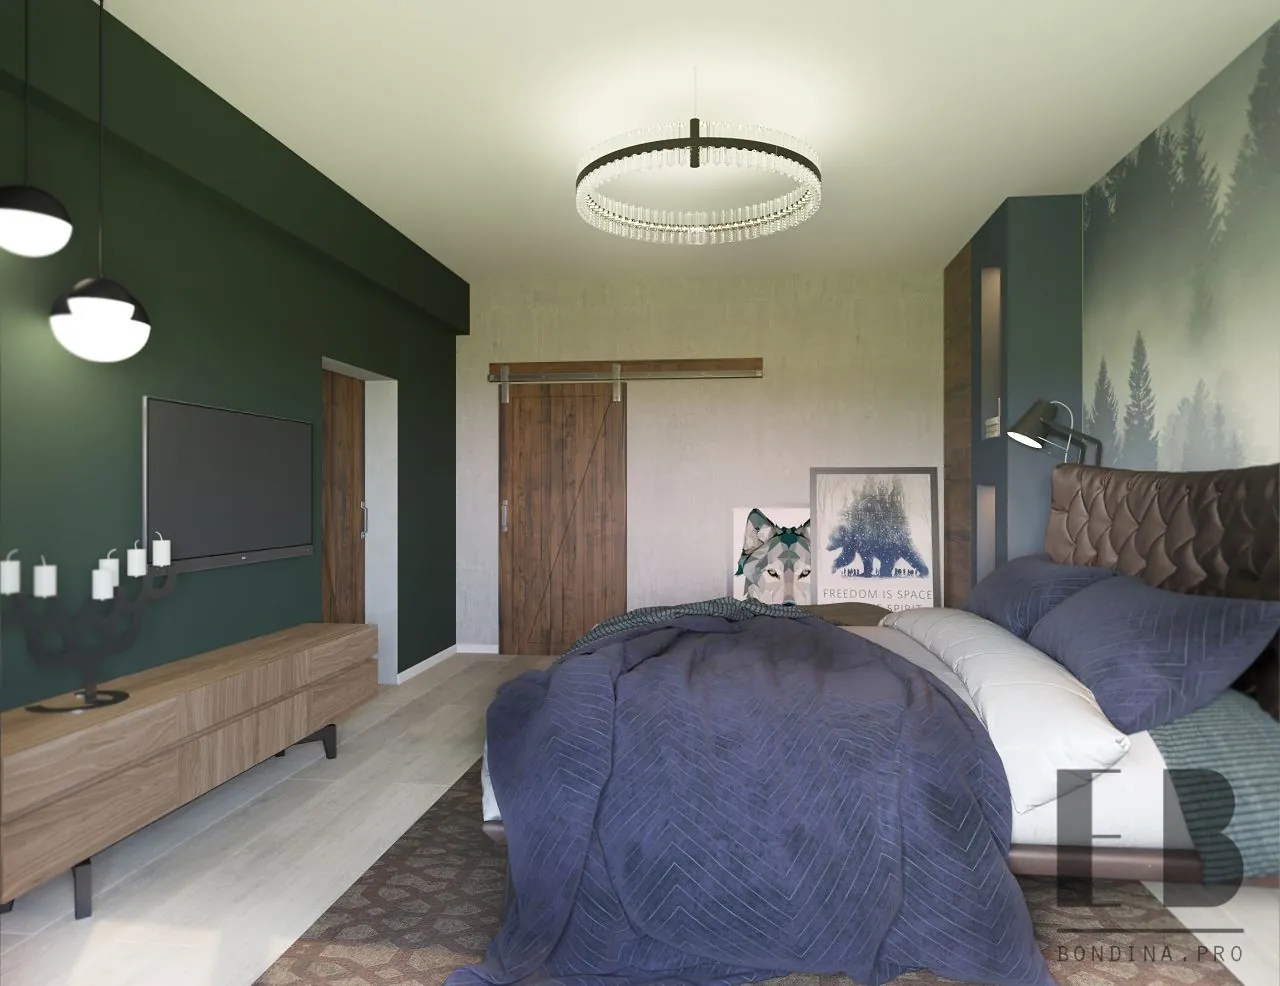 Trendy green bedroom interior design